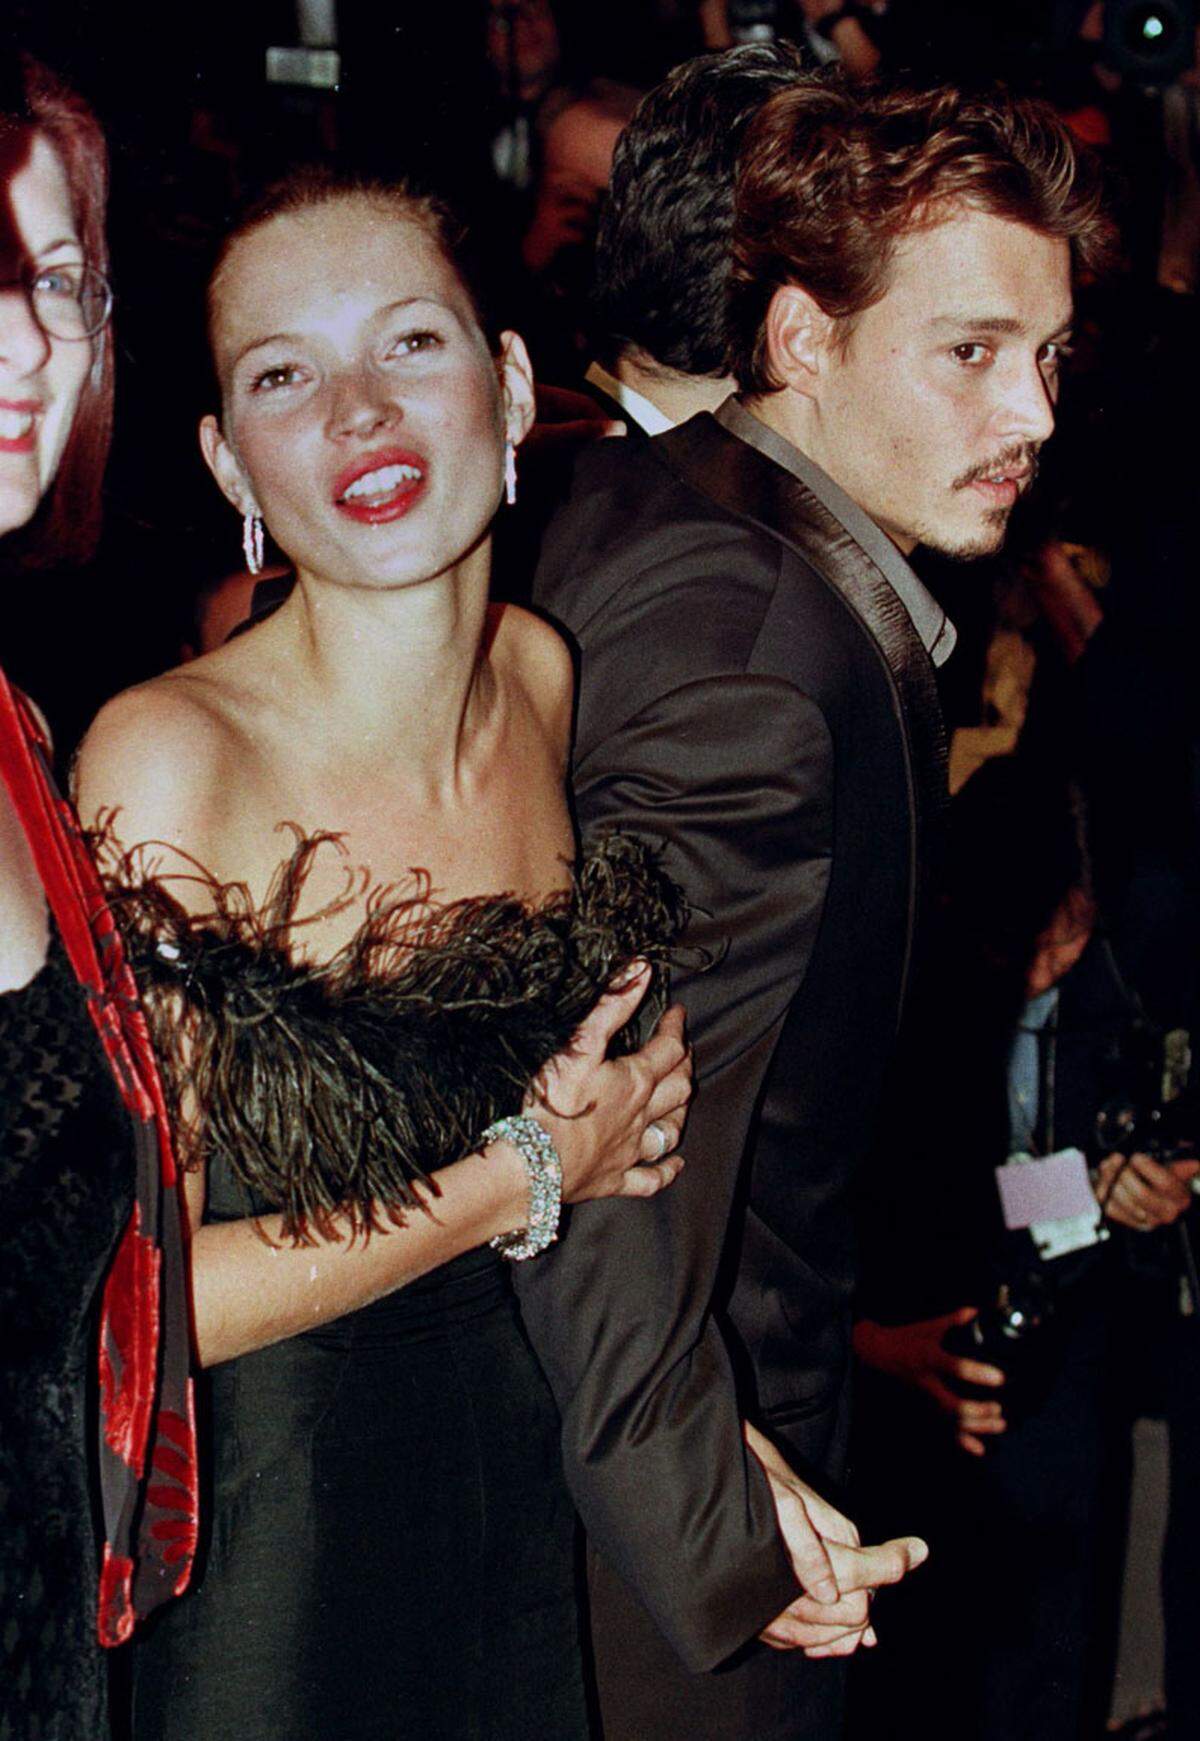 1994 wurden Kate Moss und Schauspieler Johnny Depp ein Paar, 1998 trennten sie sich wieder. Ebenfalls liiert war sie mit dem berühmten Modefotografen Mario Sorrenti, weiters wird ihr eine Affäre mit James Bond Darsteller Daniel Craig nachgesagt.